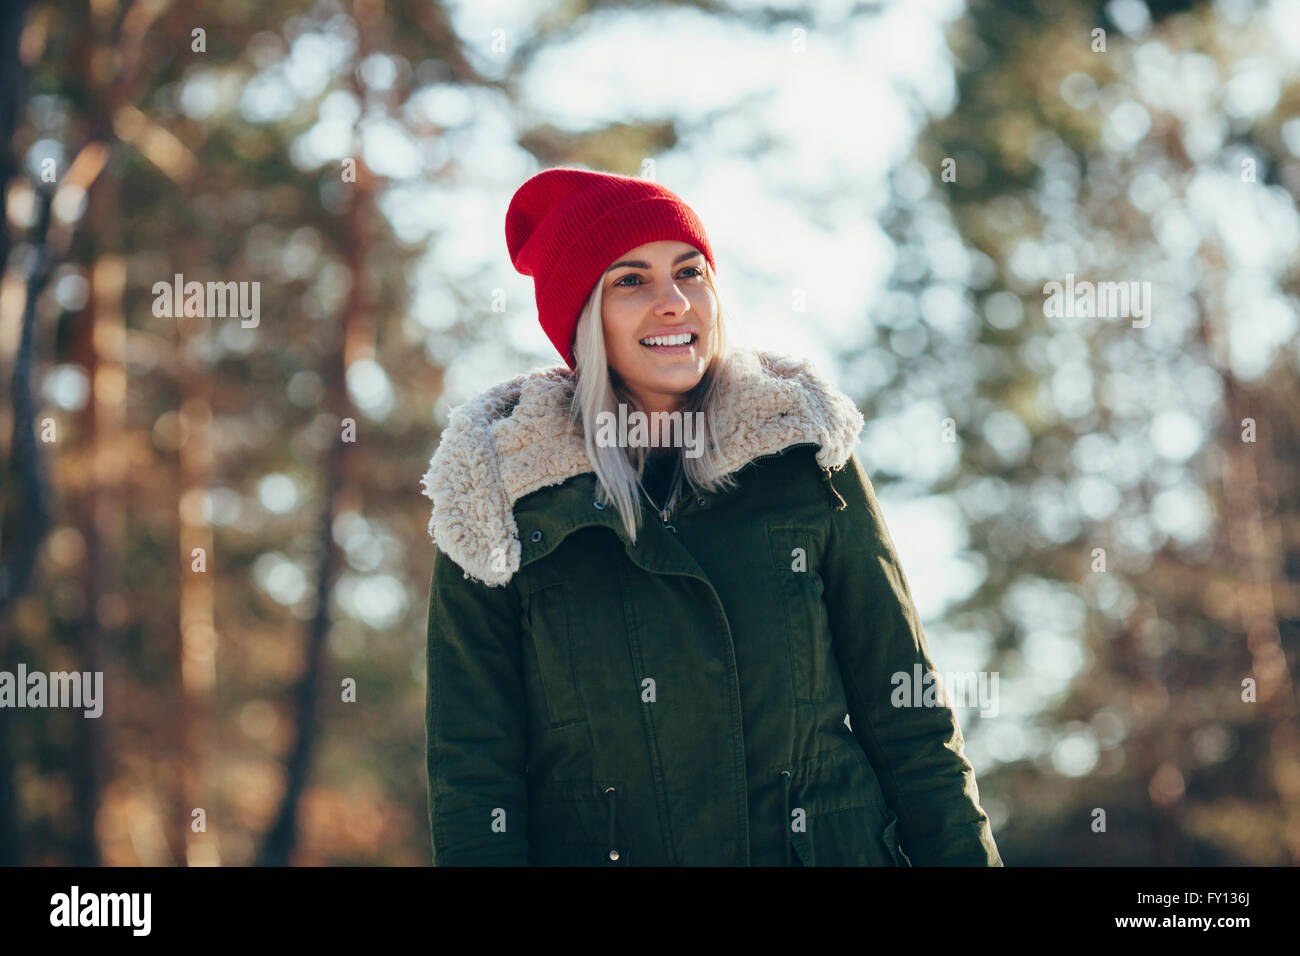 Basso angolo vista di felice giovane donna indossa knit hat e giacca mentre guarda lontano Foto Stock